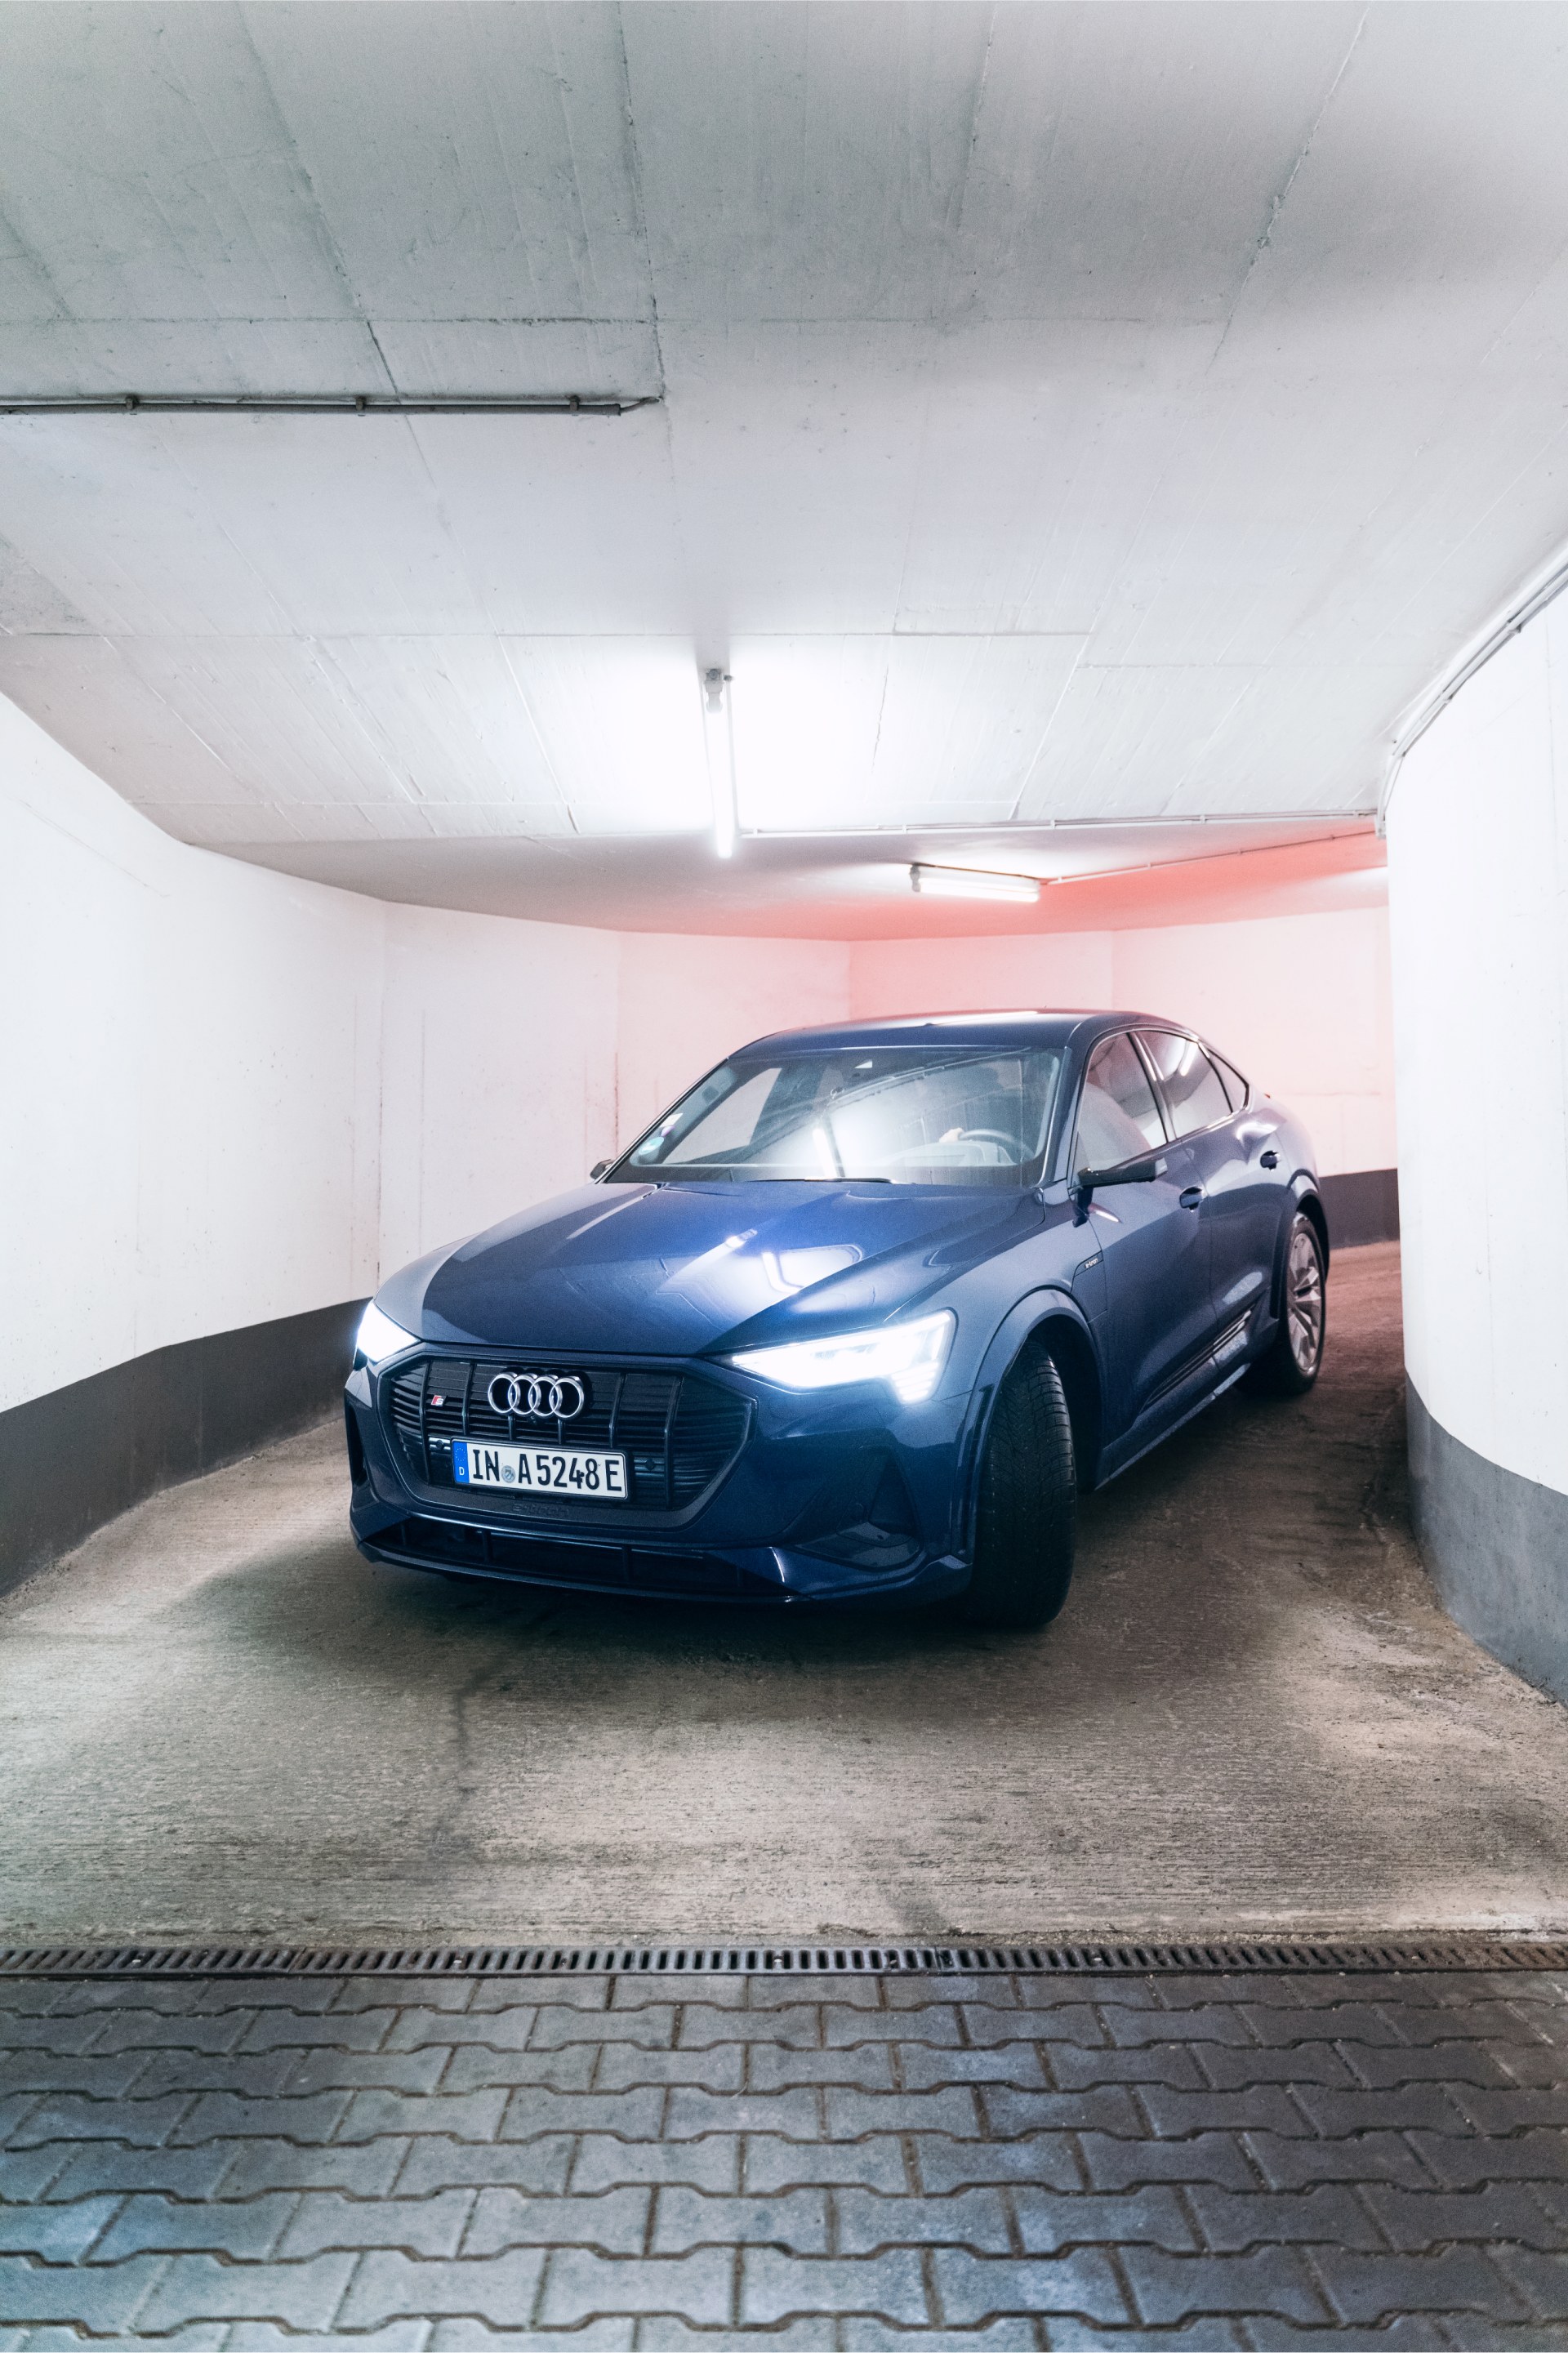 Widok z przodu Audi e-tron Copelanda wjeżdżającego do garażu.